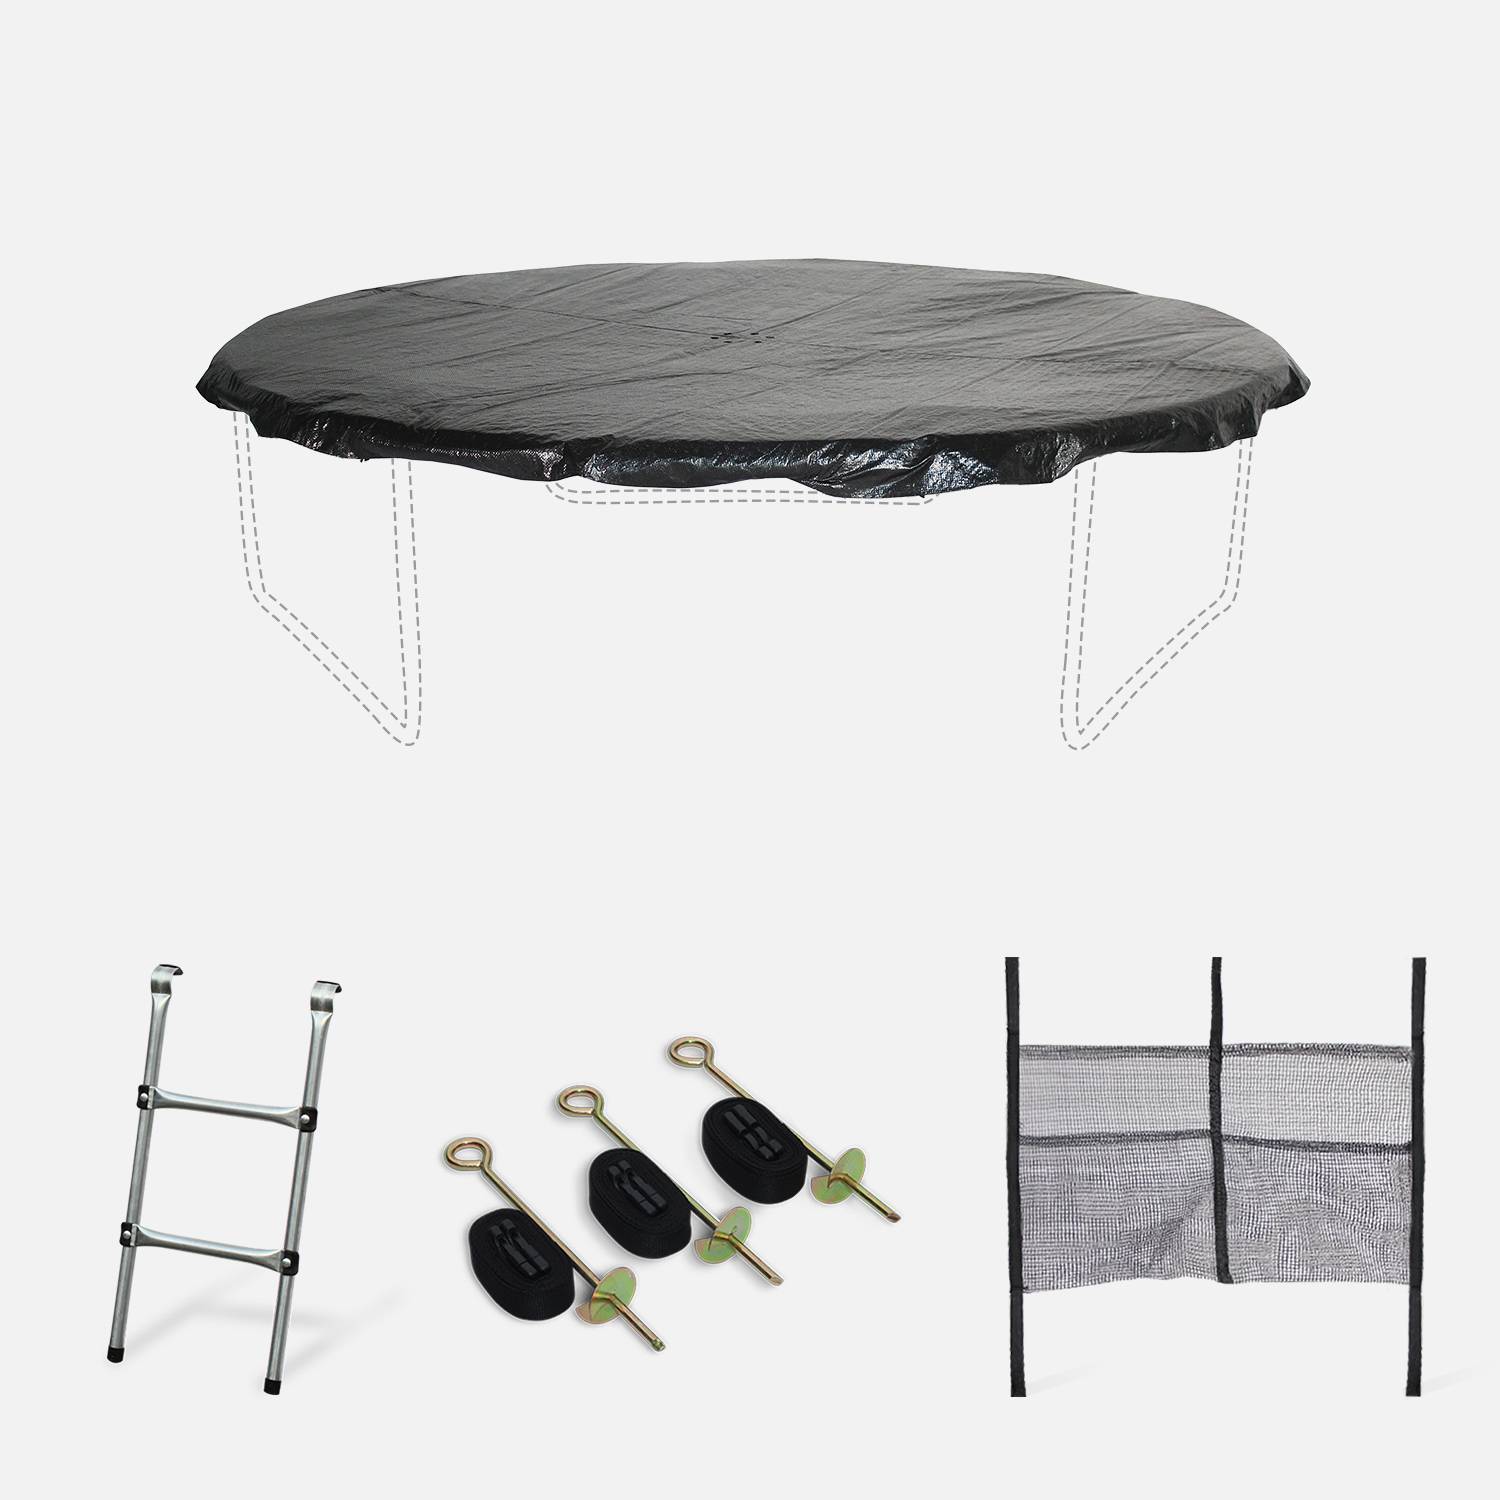 Pacote de acessórios para o trampolim Pluton/Gemini/Pluton INNER Ø 250cm - Escada, cobertura de proteção, rede para guardar sapatos e kit de ancoragem Photo1